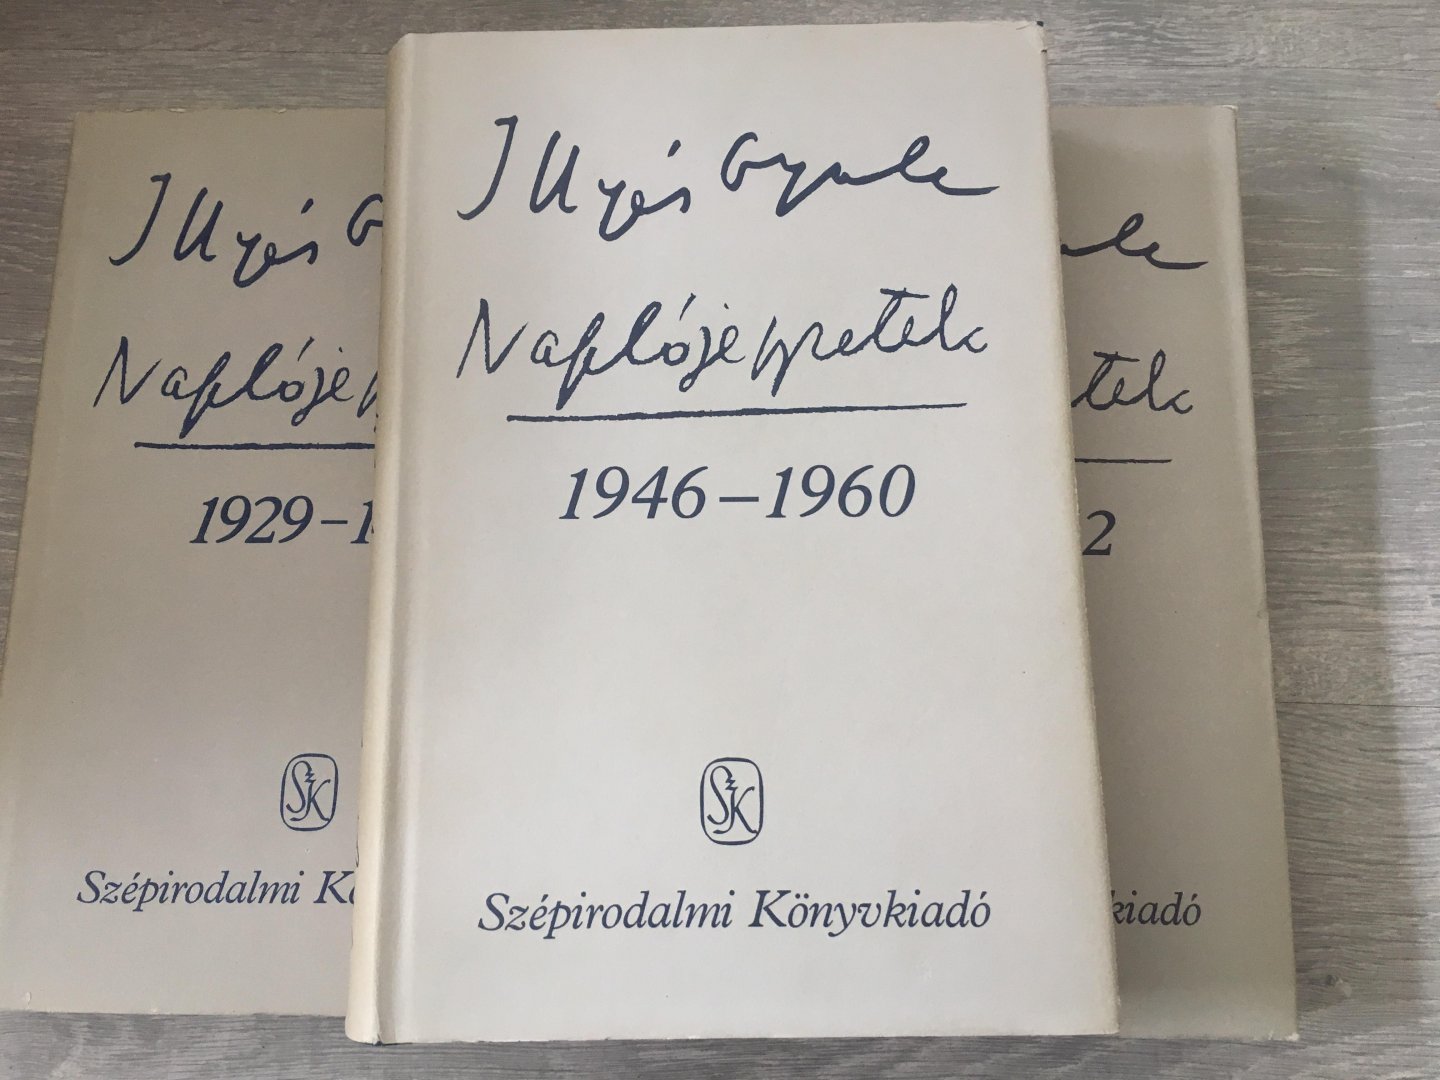 Illyés Gyuláné - Illyés Gyula Naplójegyzetek, 1929-1945, 1946-1960, 1961-1982, 3 volumes